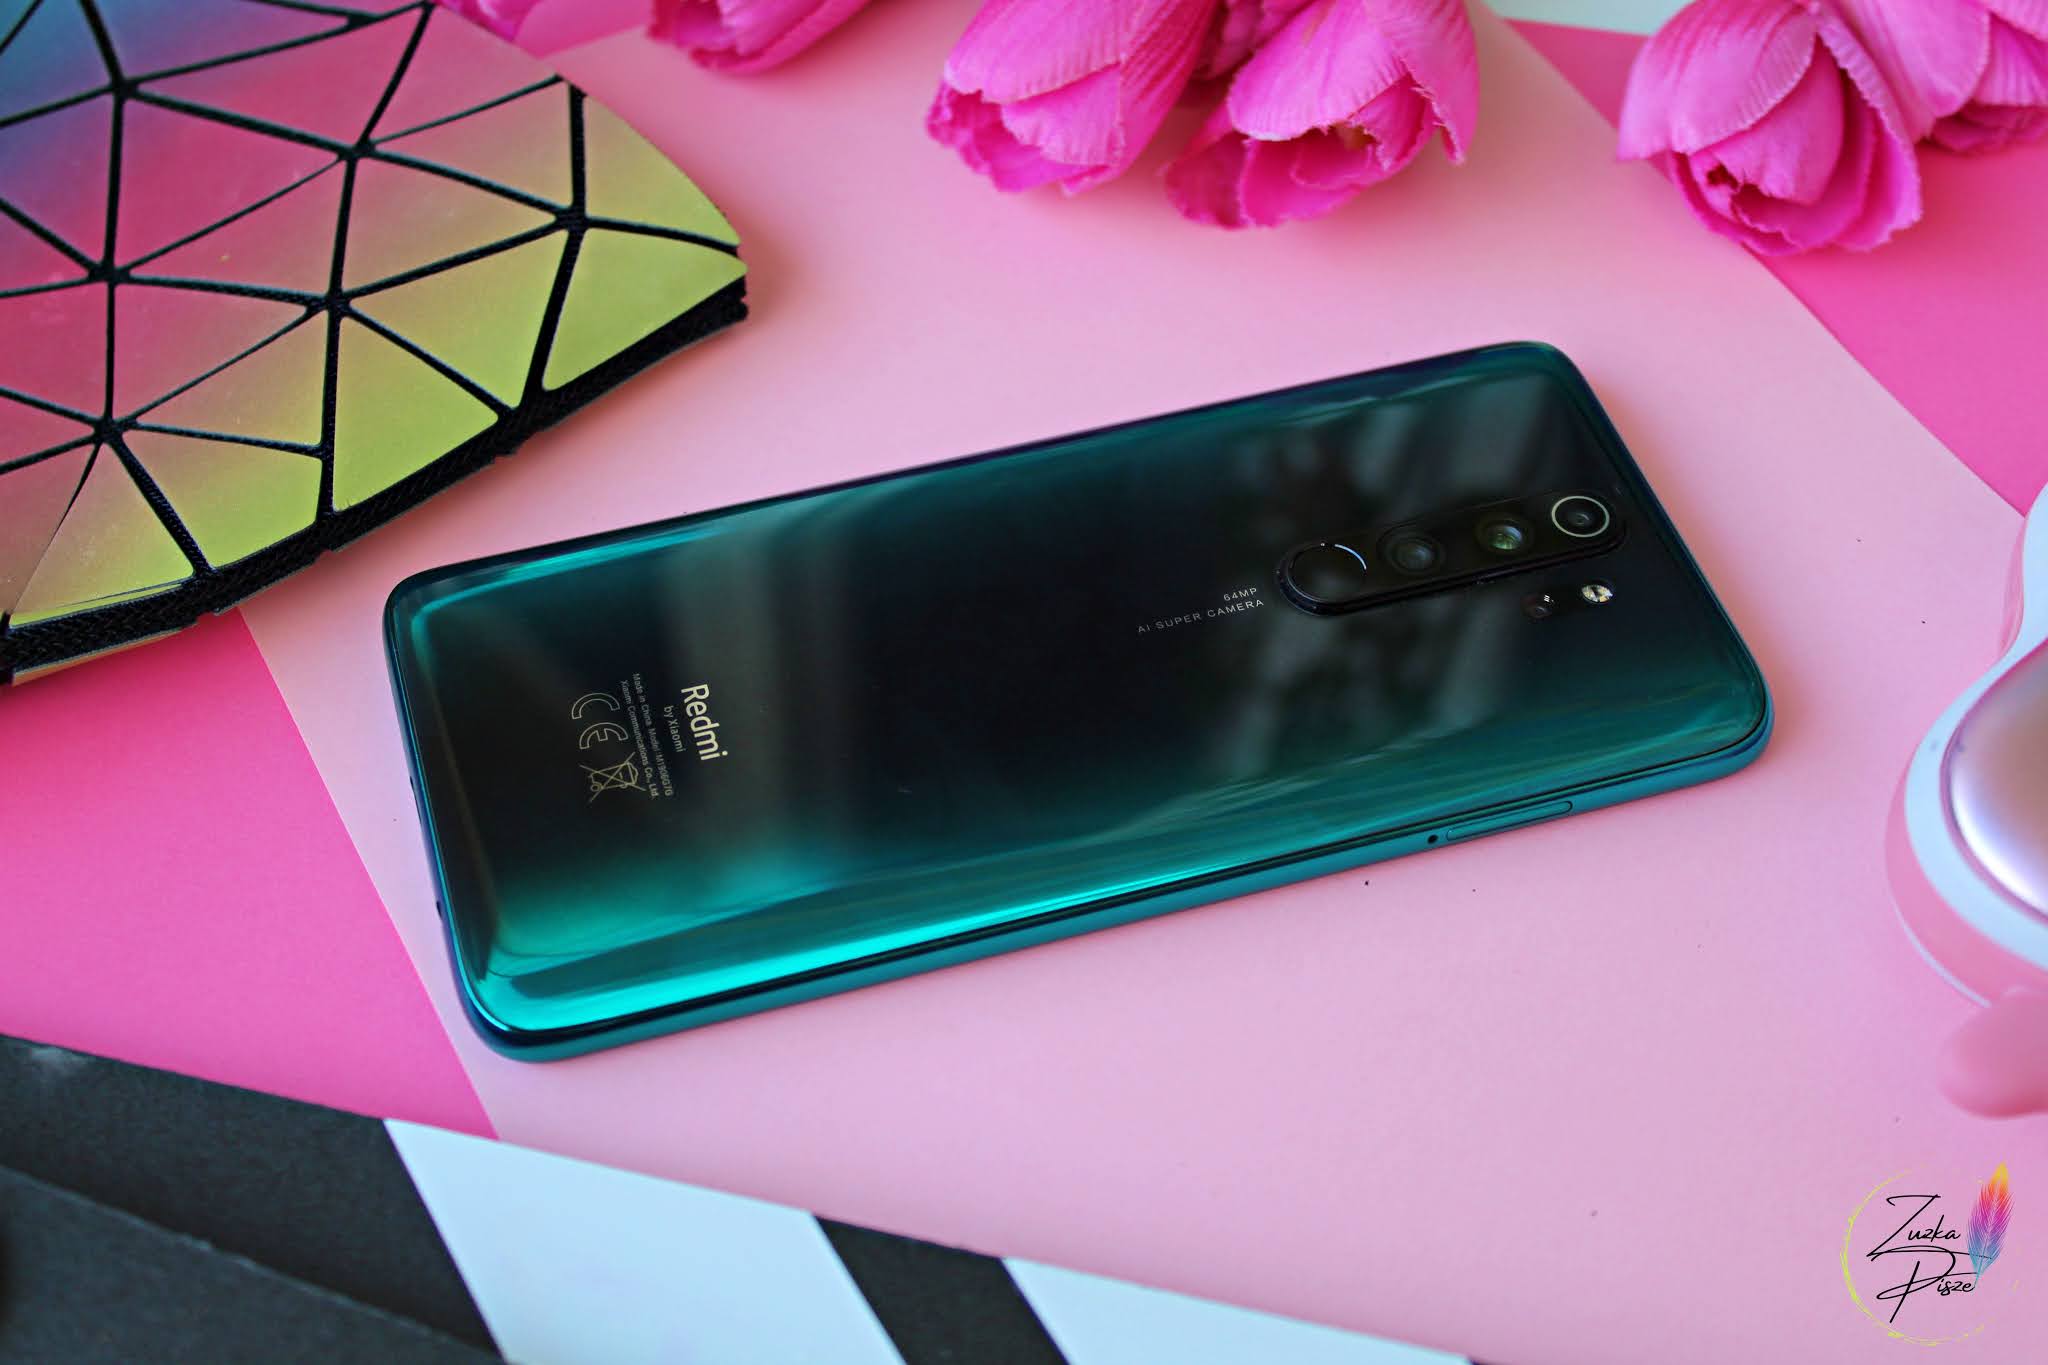 XIAOMI Redmi Note 8 PRO - recenzja smartfonu | Zuzka Pisze - strona typowo kobieca - kosmetyki, porady, książki, dziecko, lifestyle